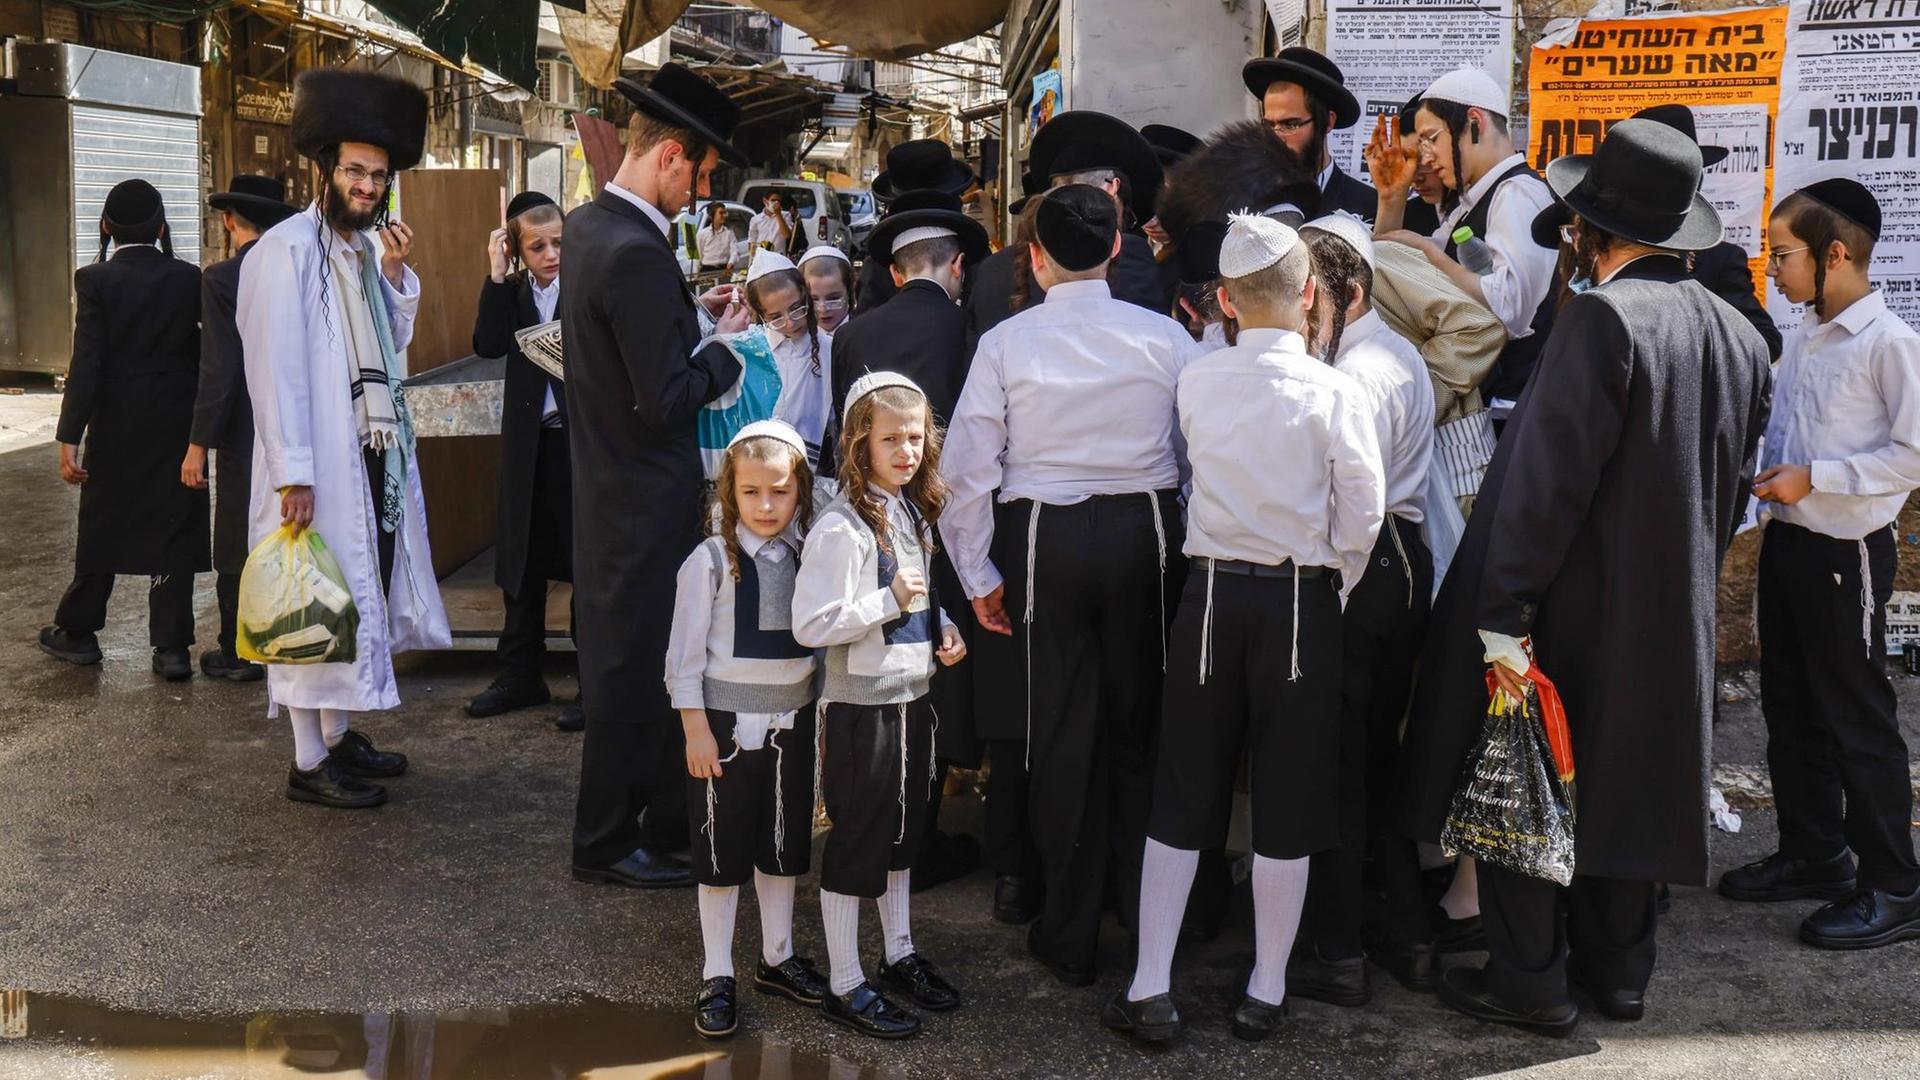 Ultra-orthodoxe jüdische Männer und Jungen stehen zusammen, einige tragen Masken.